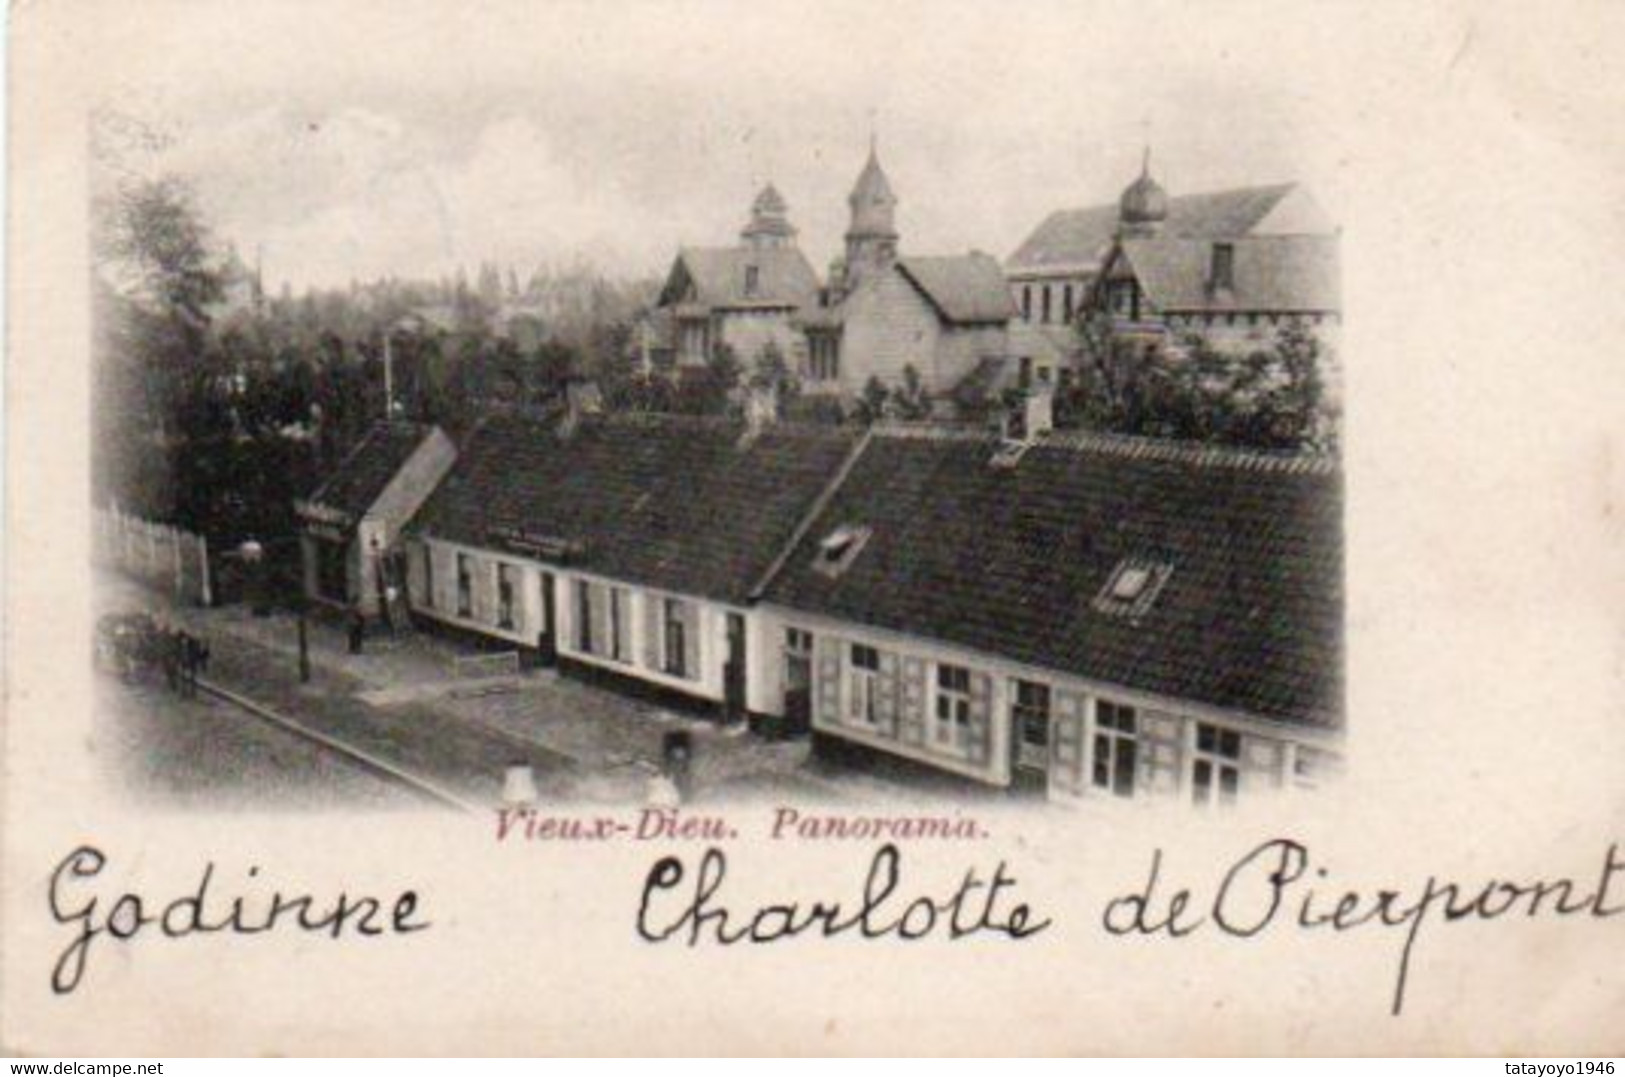 Vieux-Dieu Panorama Circulé En 1901 - Mortsel